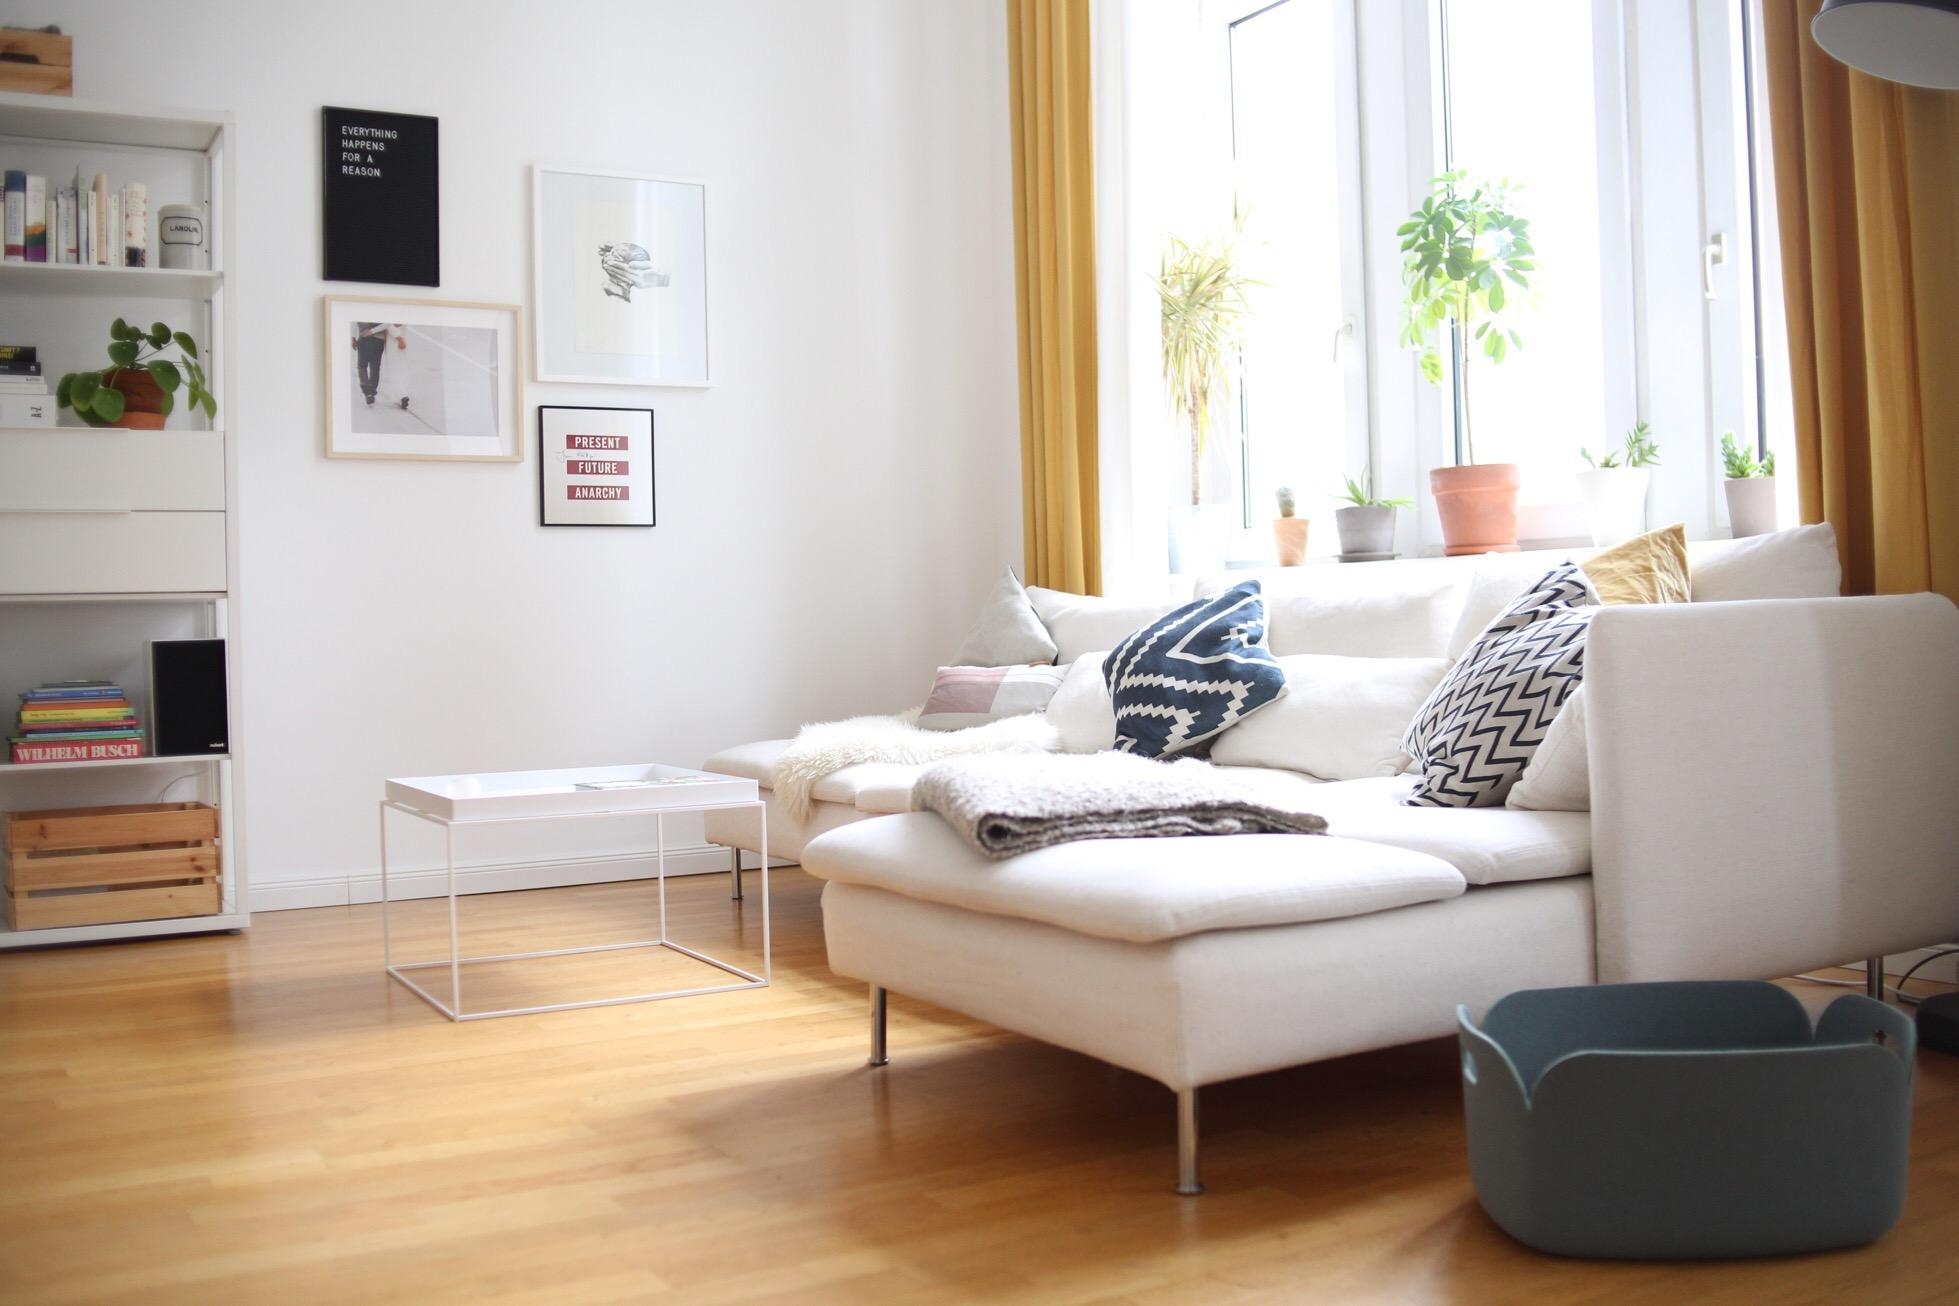 Licht und liebe.
#livingroom #licht #liebe #couchstyle